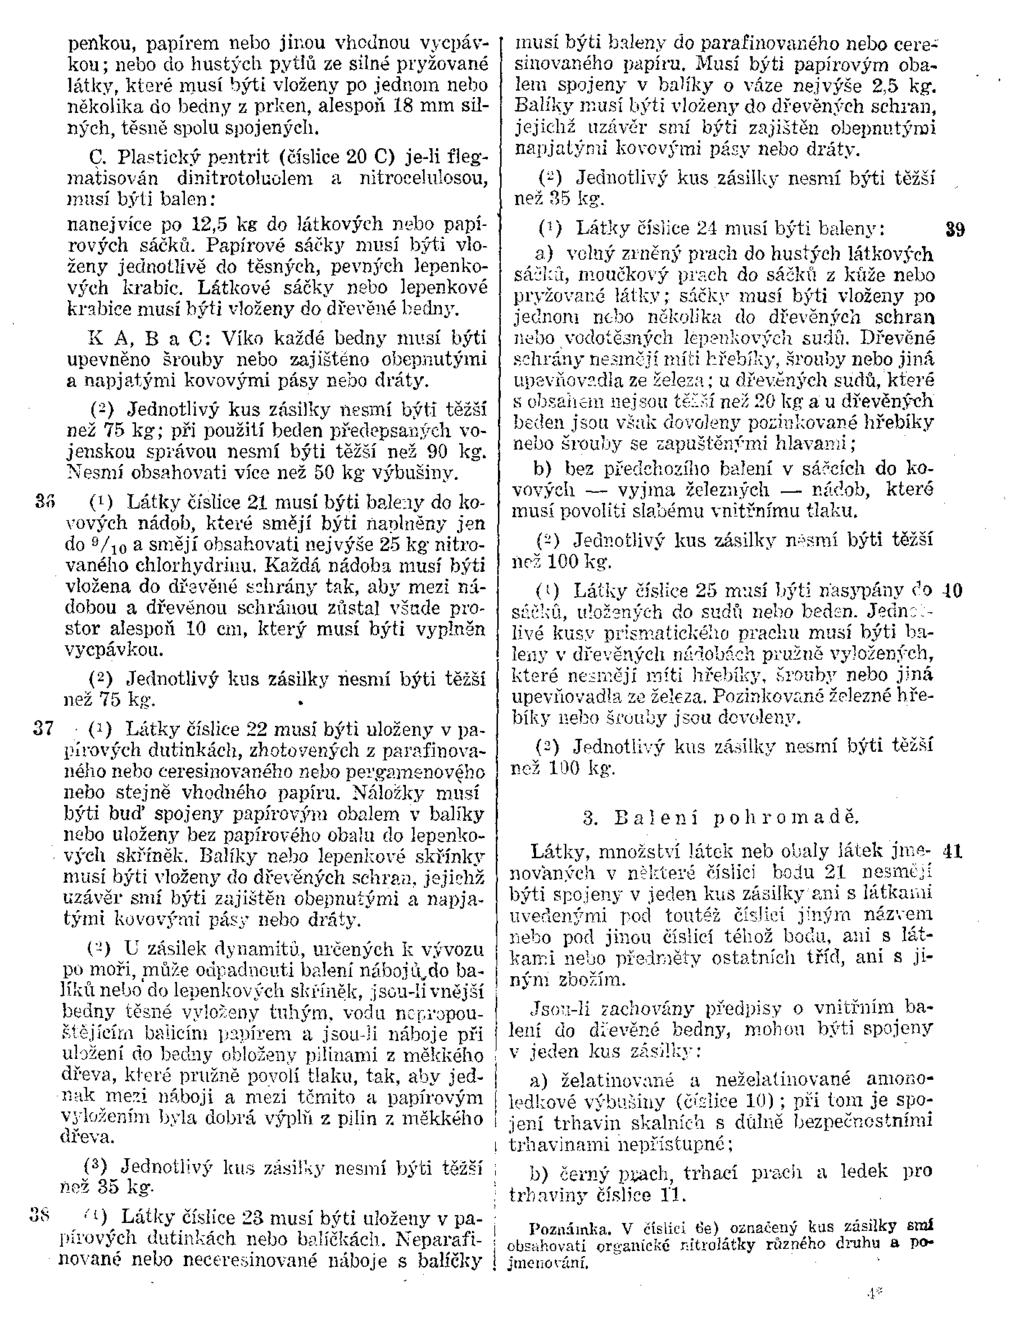 Strana 66 Zbierka zákonov